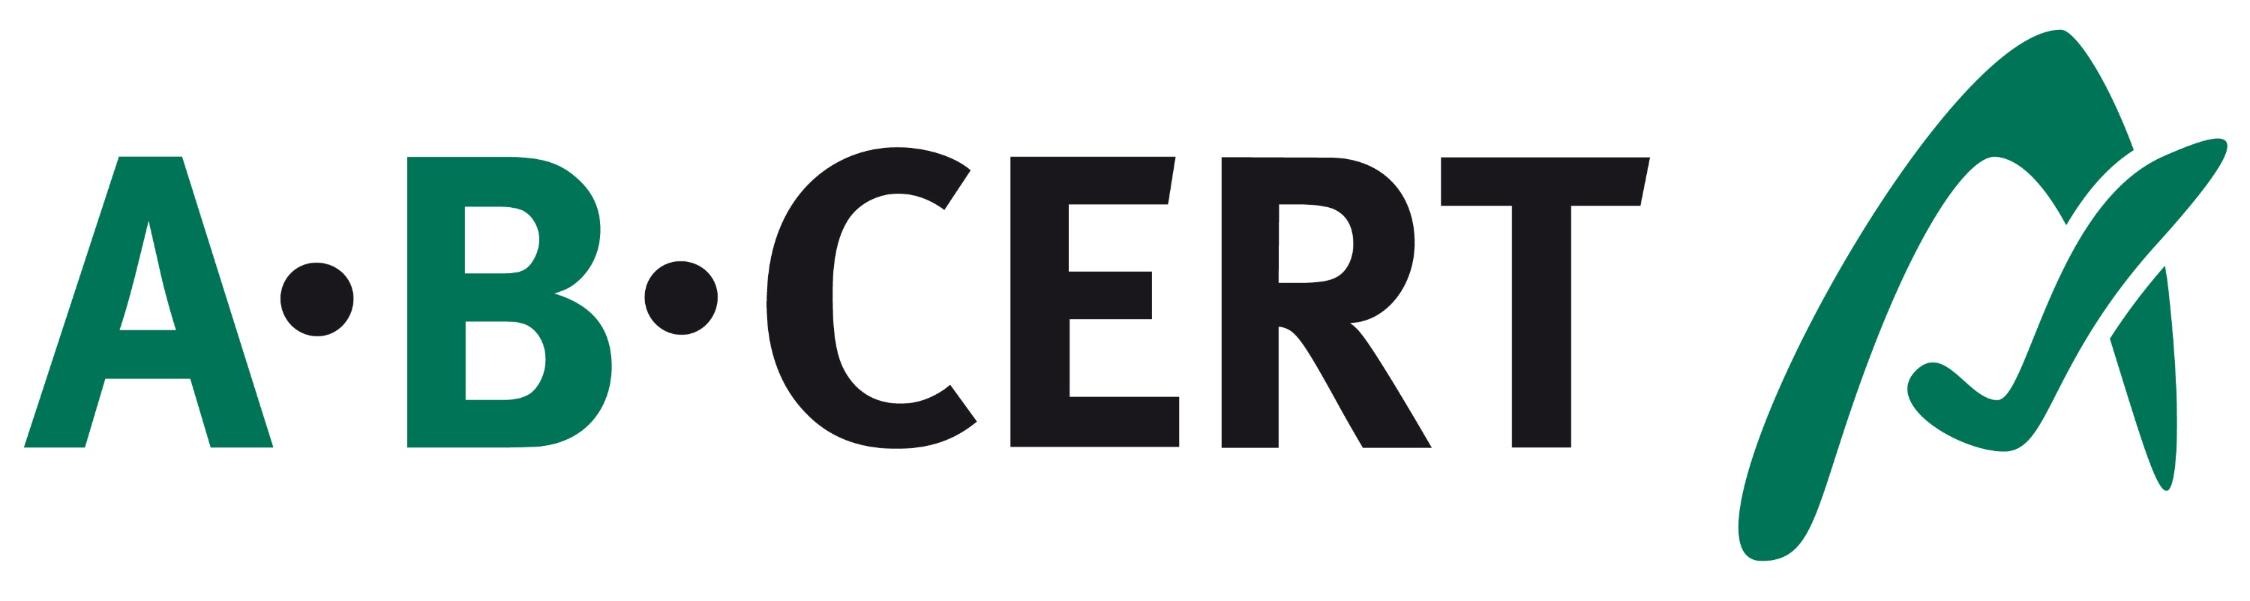 Abcert Logo